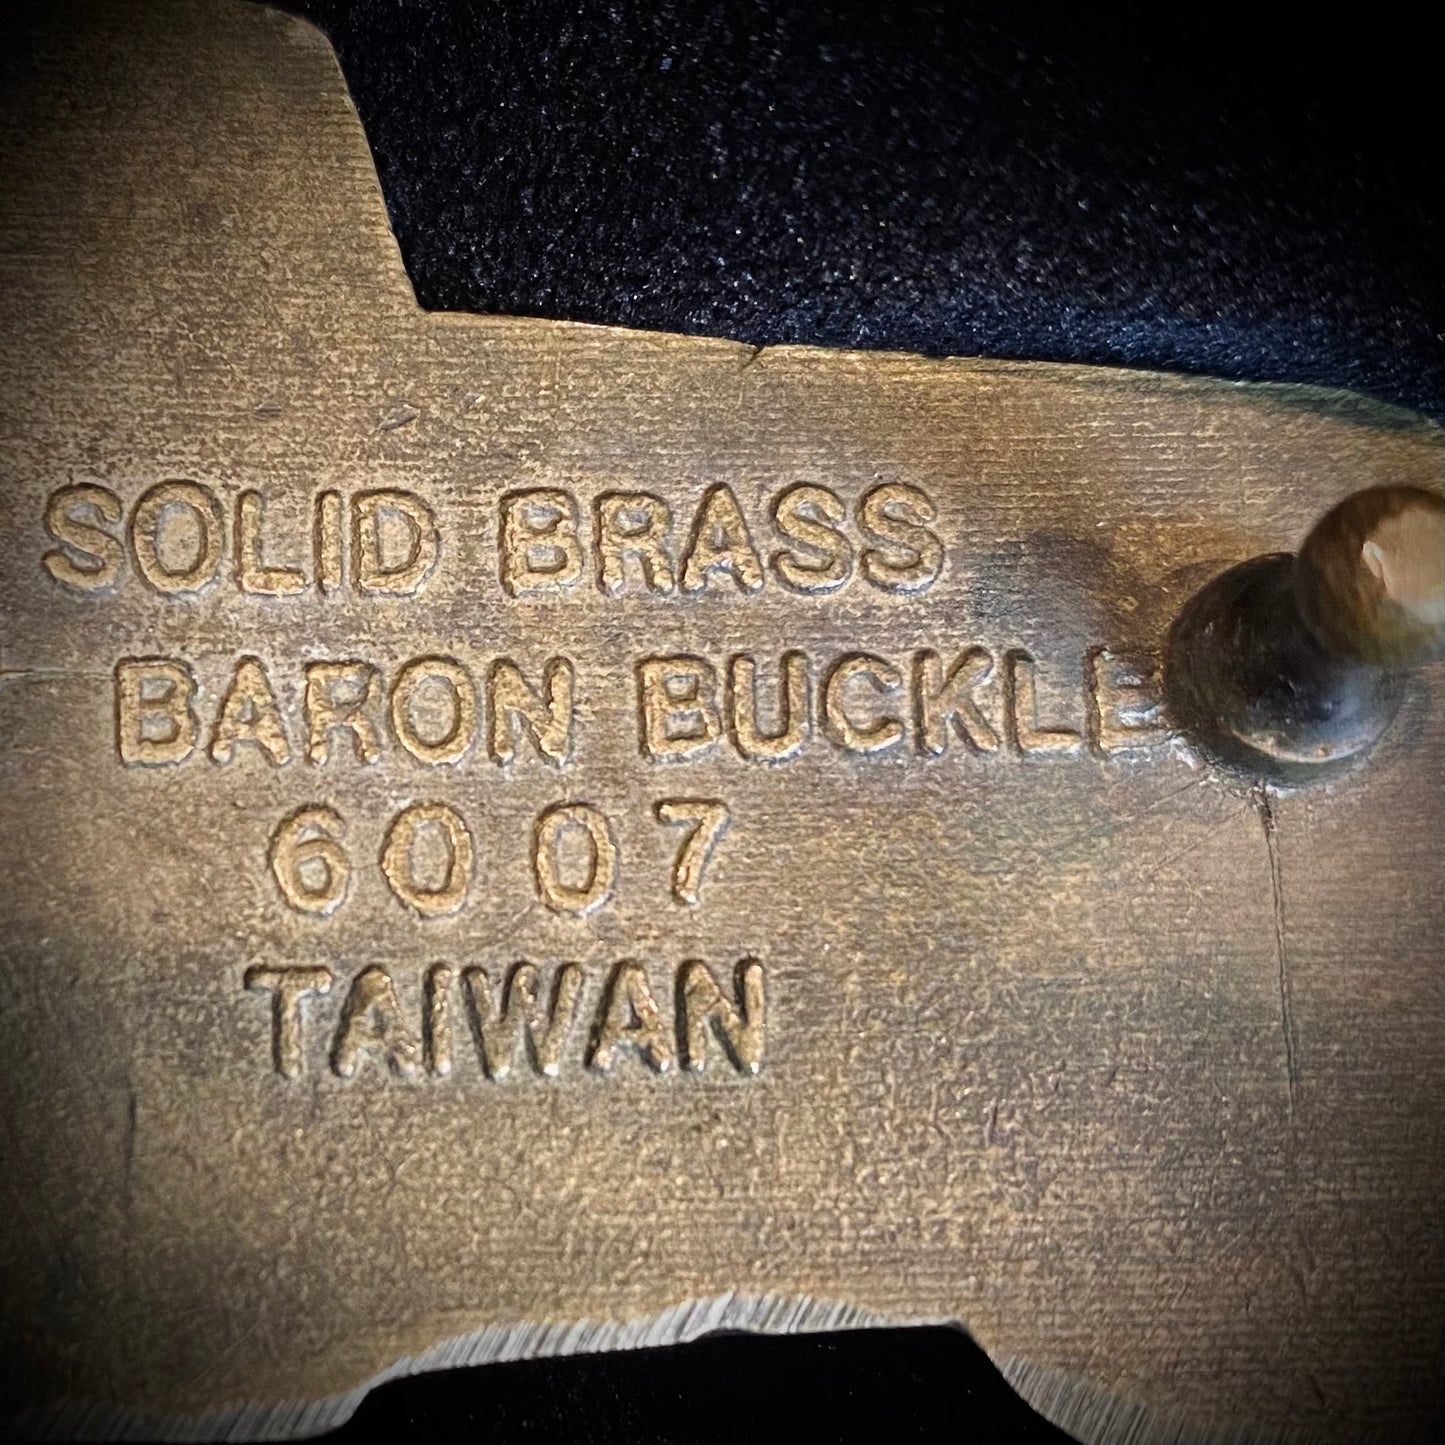 Vintage Car Solid Brass Belt Buckle